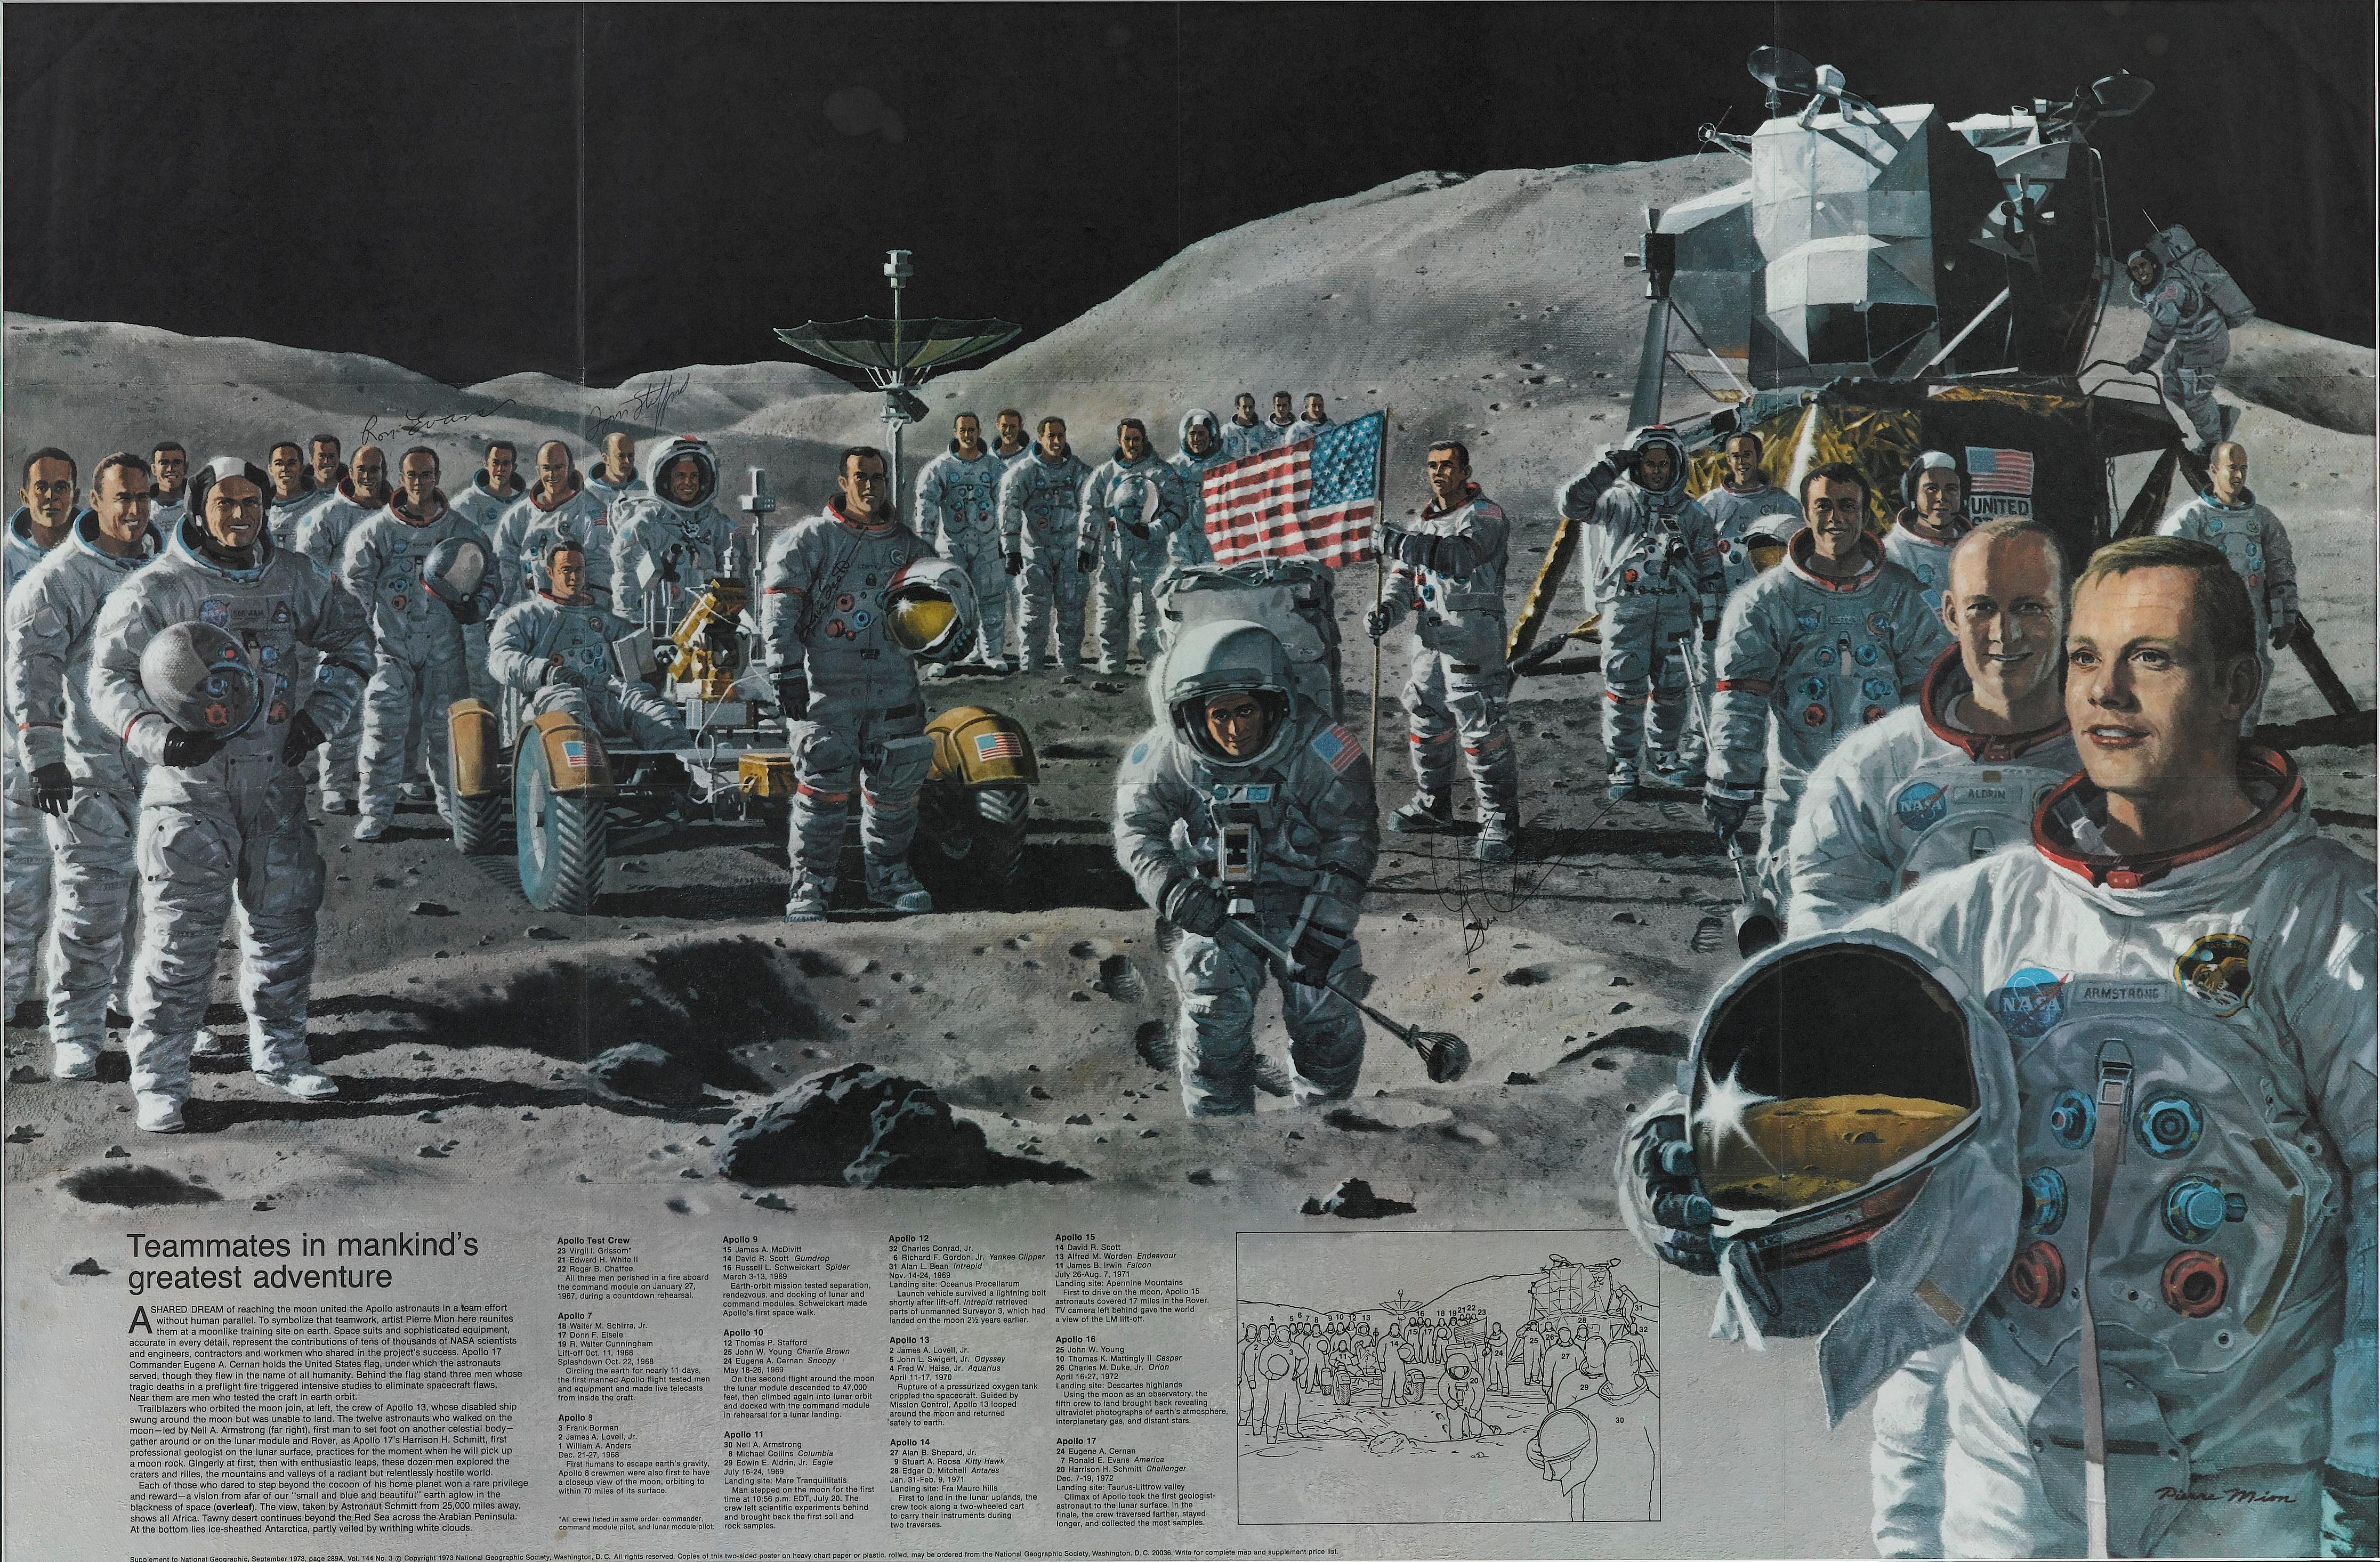 Il s'agit d'une affiche originale autographiée tirée d'un numéro de 1973 du magazine National Geographic, célébrant les missions historiques d'Apollo, de la première équipe d'essai d'Apollo jusqu'à Apollo 17. Intitulée 